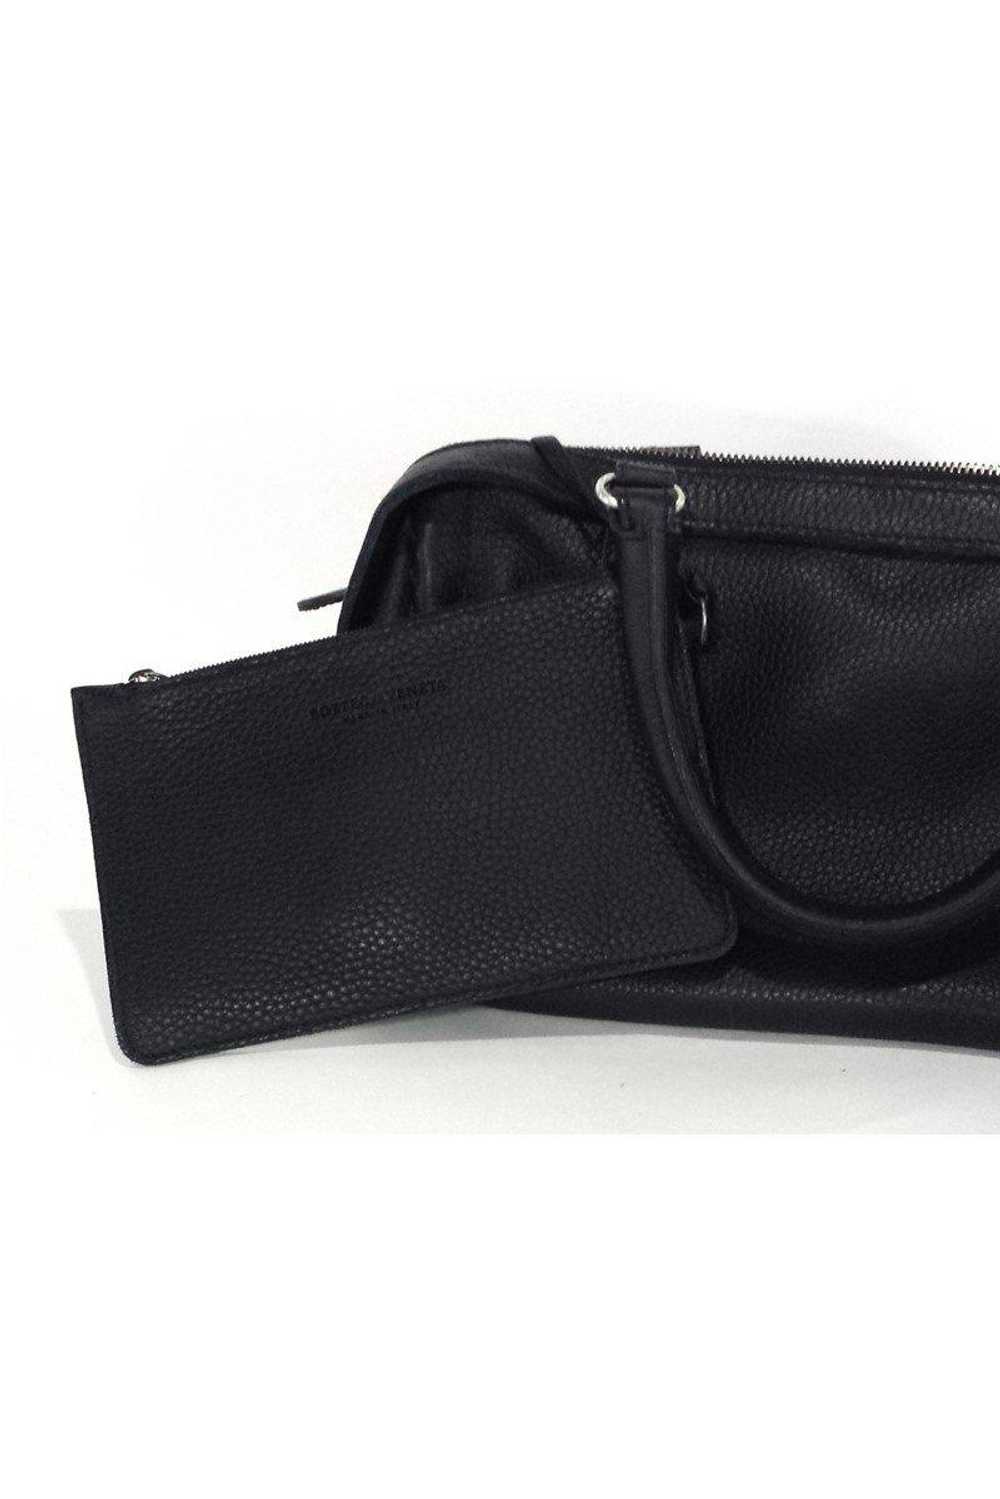 Bottega Veneta - Black Pebbled Leather Handbag - image 4